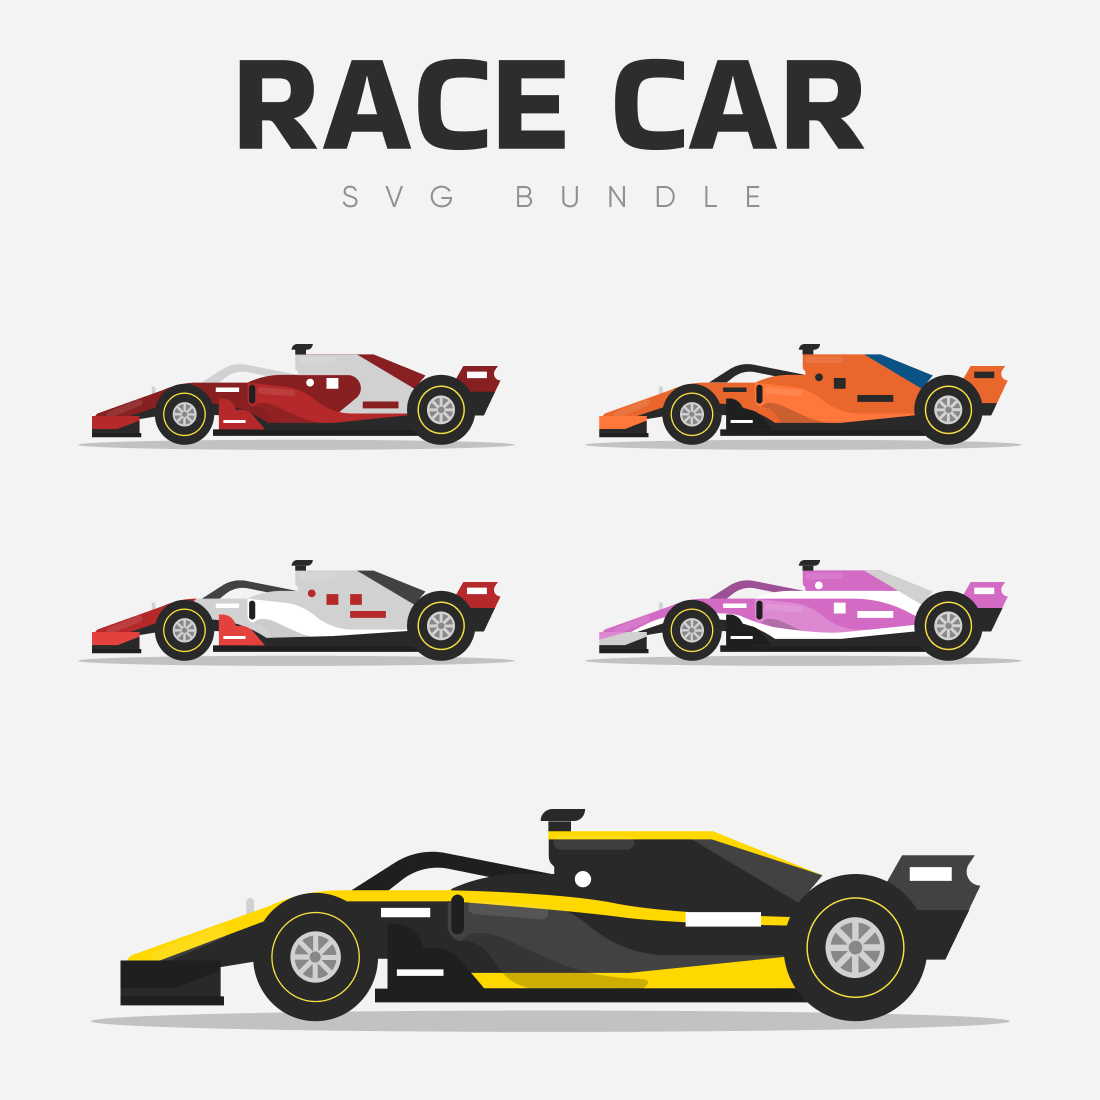 Beauty car race SVG bundle.